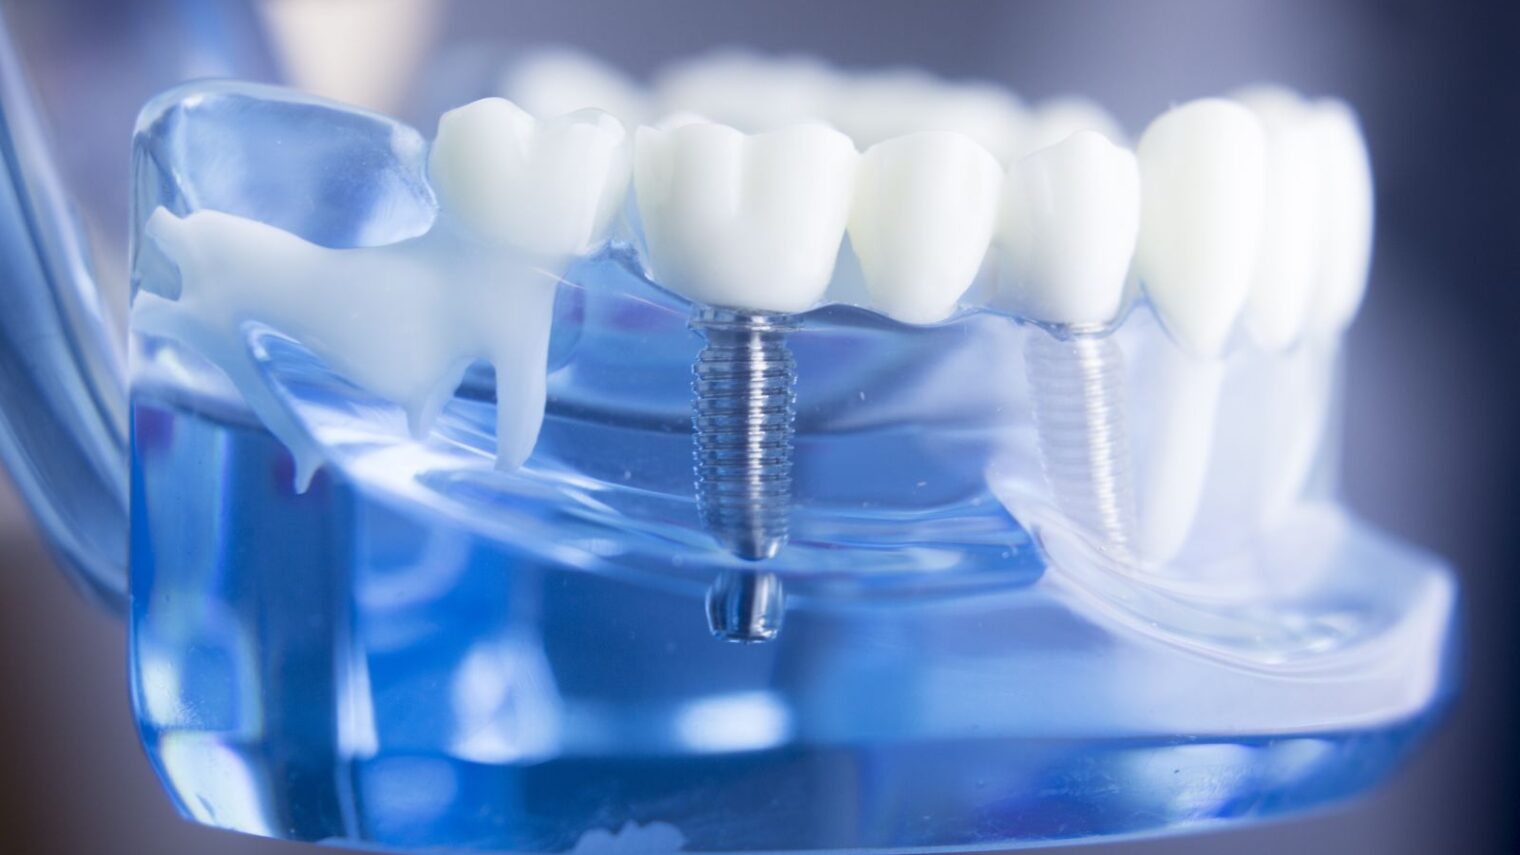 Dental implant image by Edward Olive/Shutterstock.com